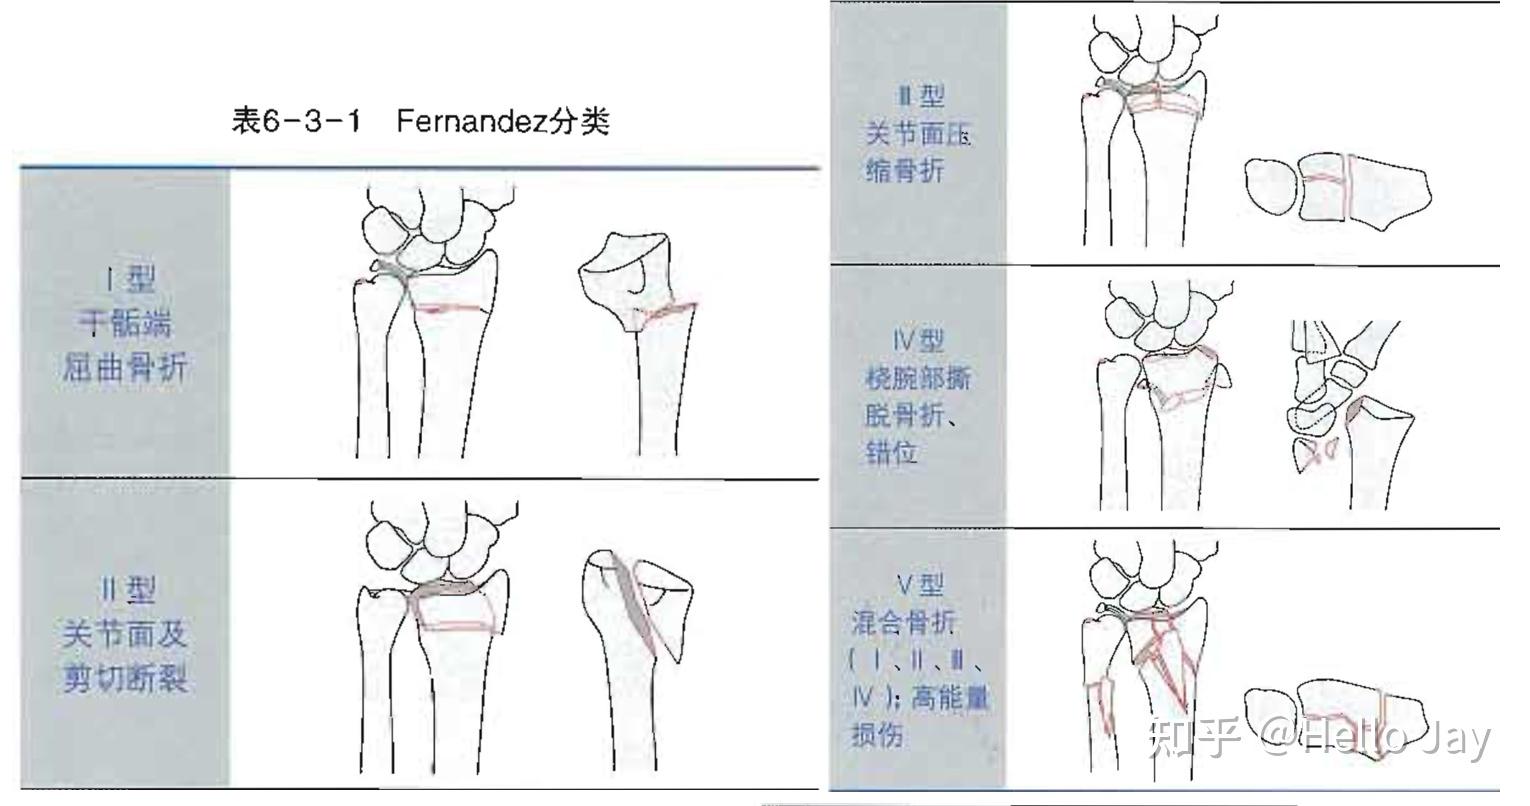 桡骨远端和腕关节骨折的治疗原则